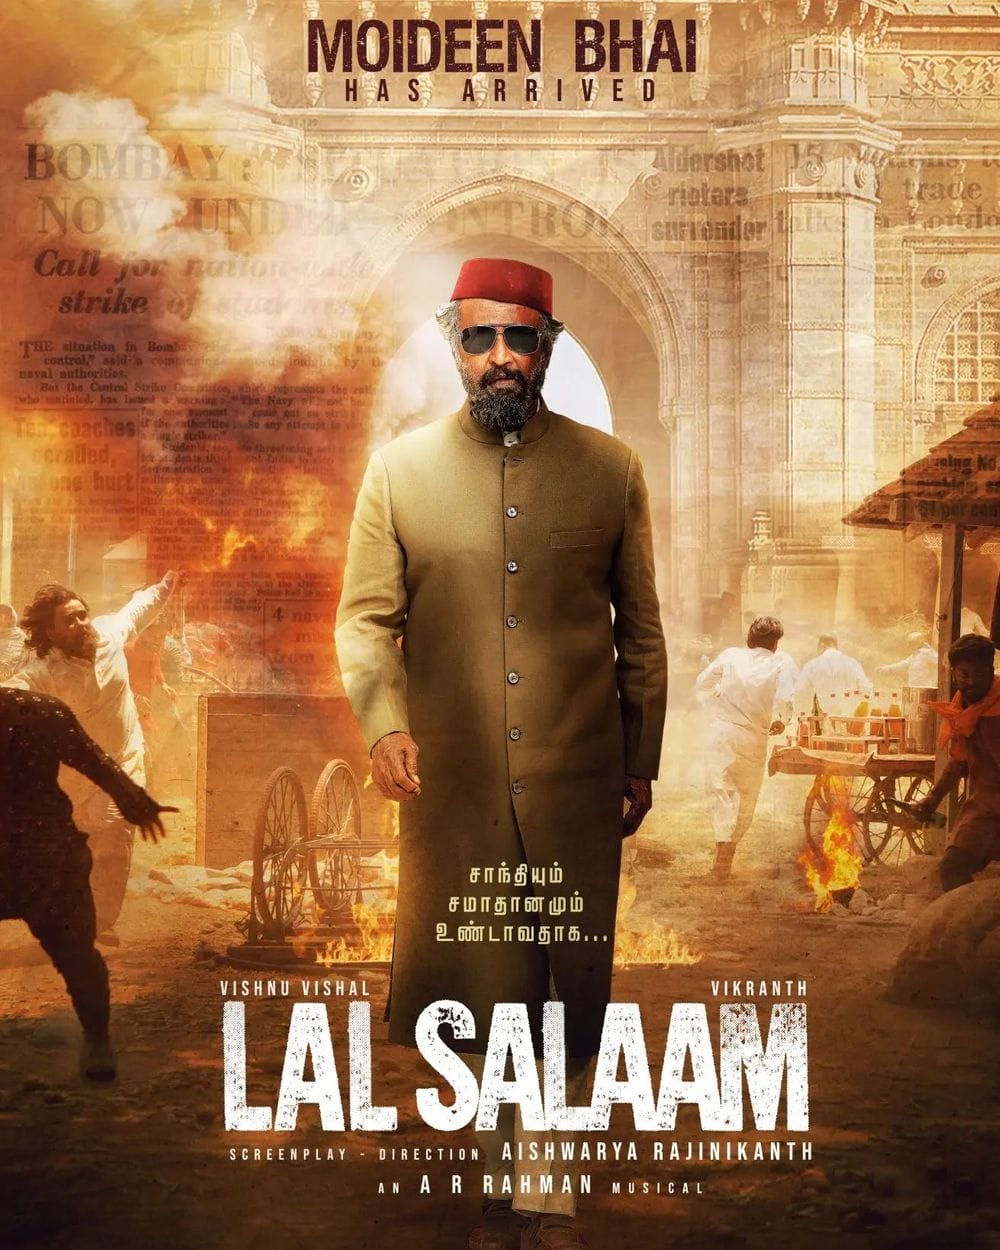 Lal Salaam Moideen Bhai Poster